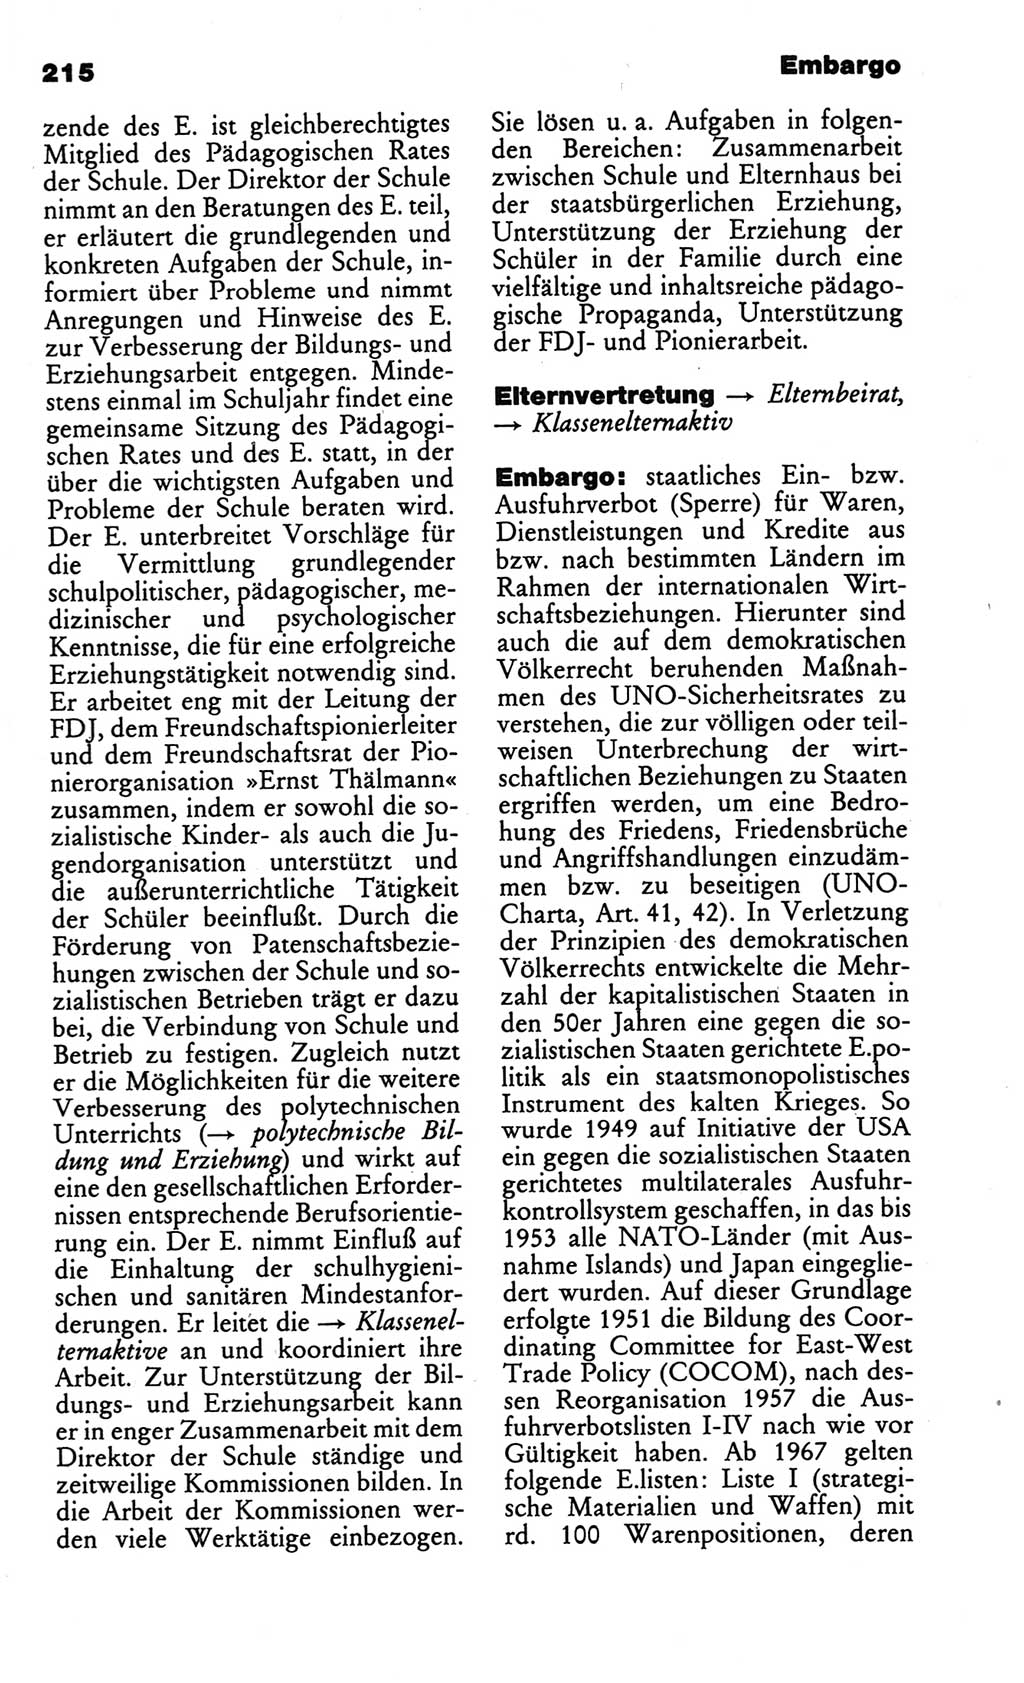 Kleines politisches Wörterbuch [Deutsche Demokratische Republik (DDR)] 1986, Seite 215 (Kl. pol. Wb. DDR 1986, S. 215)